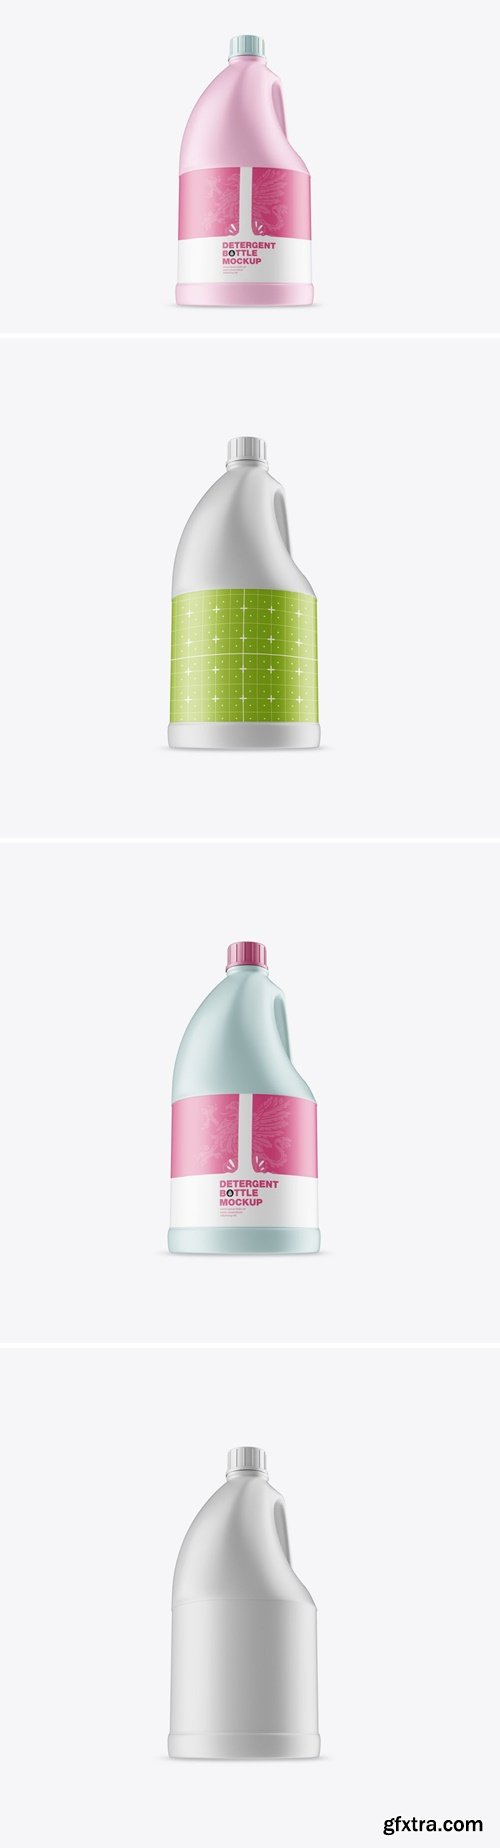 Detergent Bottle Mockup DX2RJL2